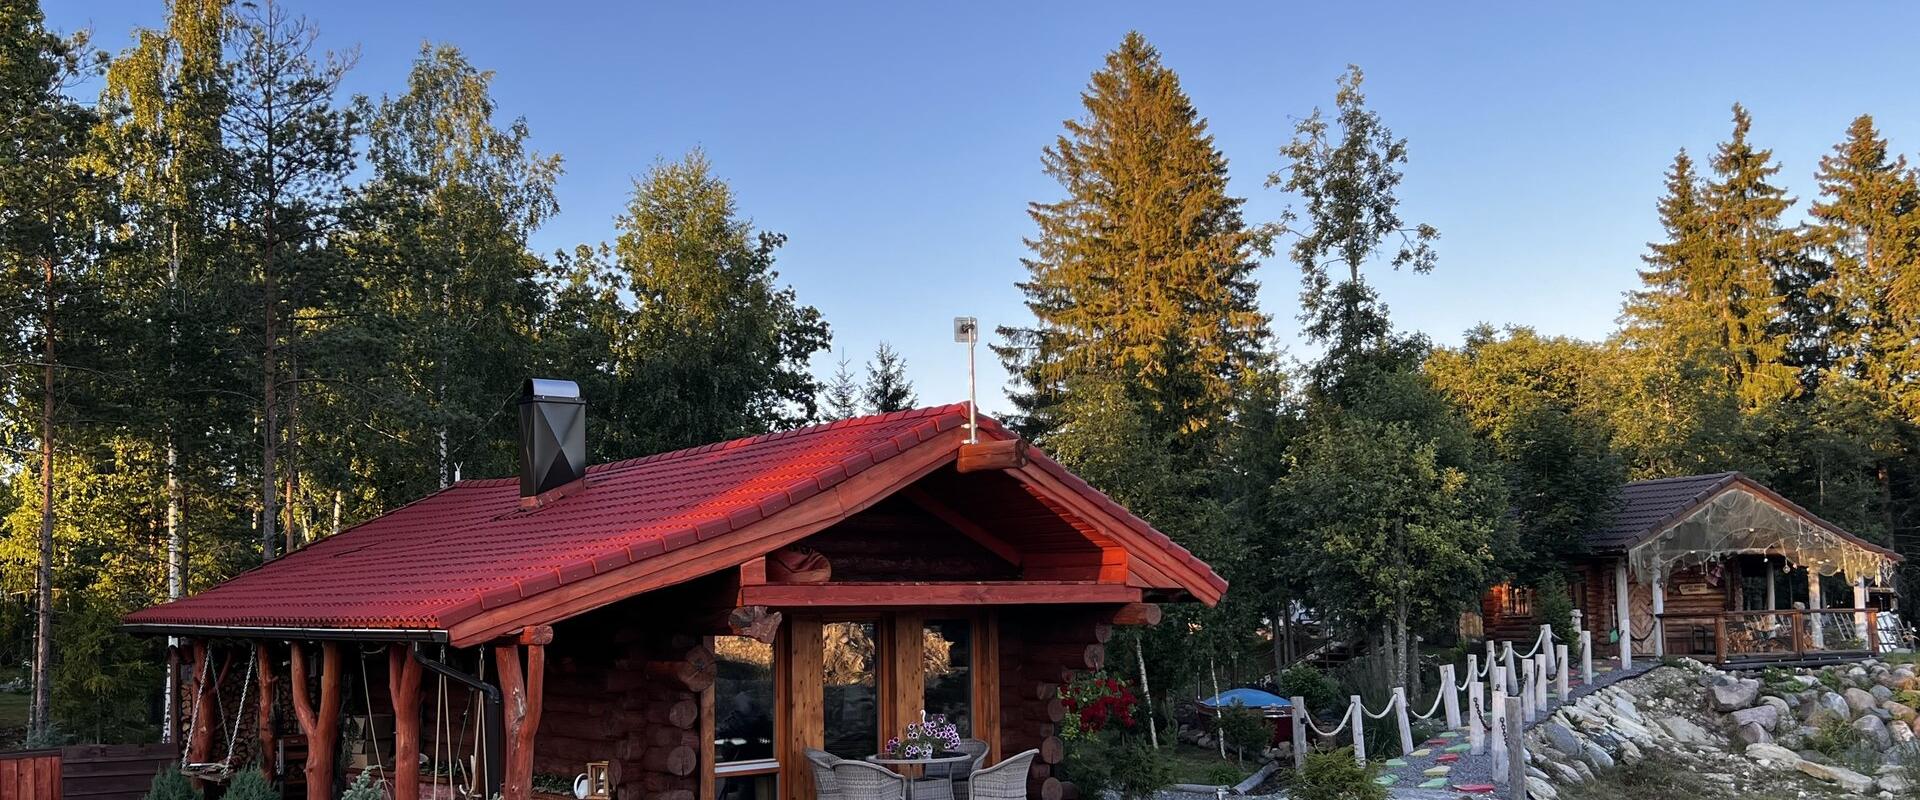 Metsakuurortin venäläinen sauna ja sen iso terassi